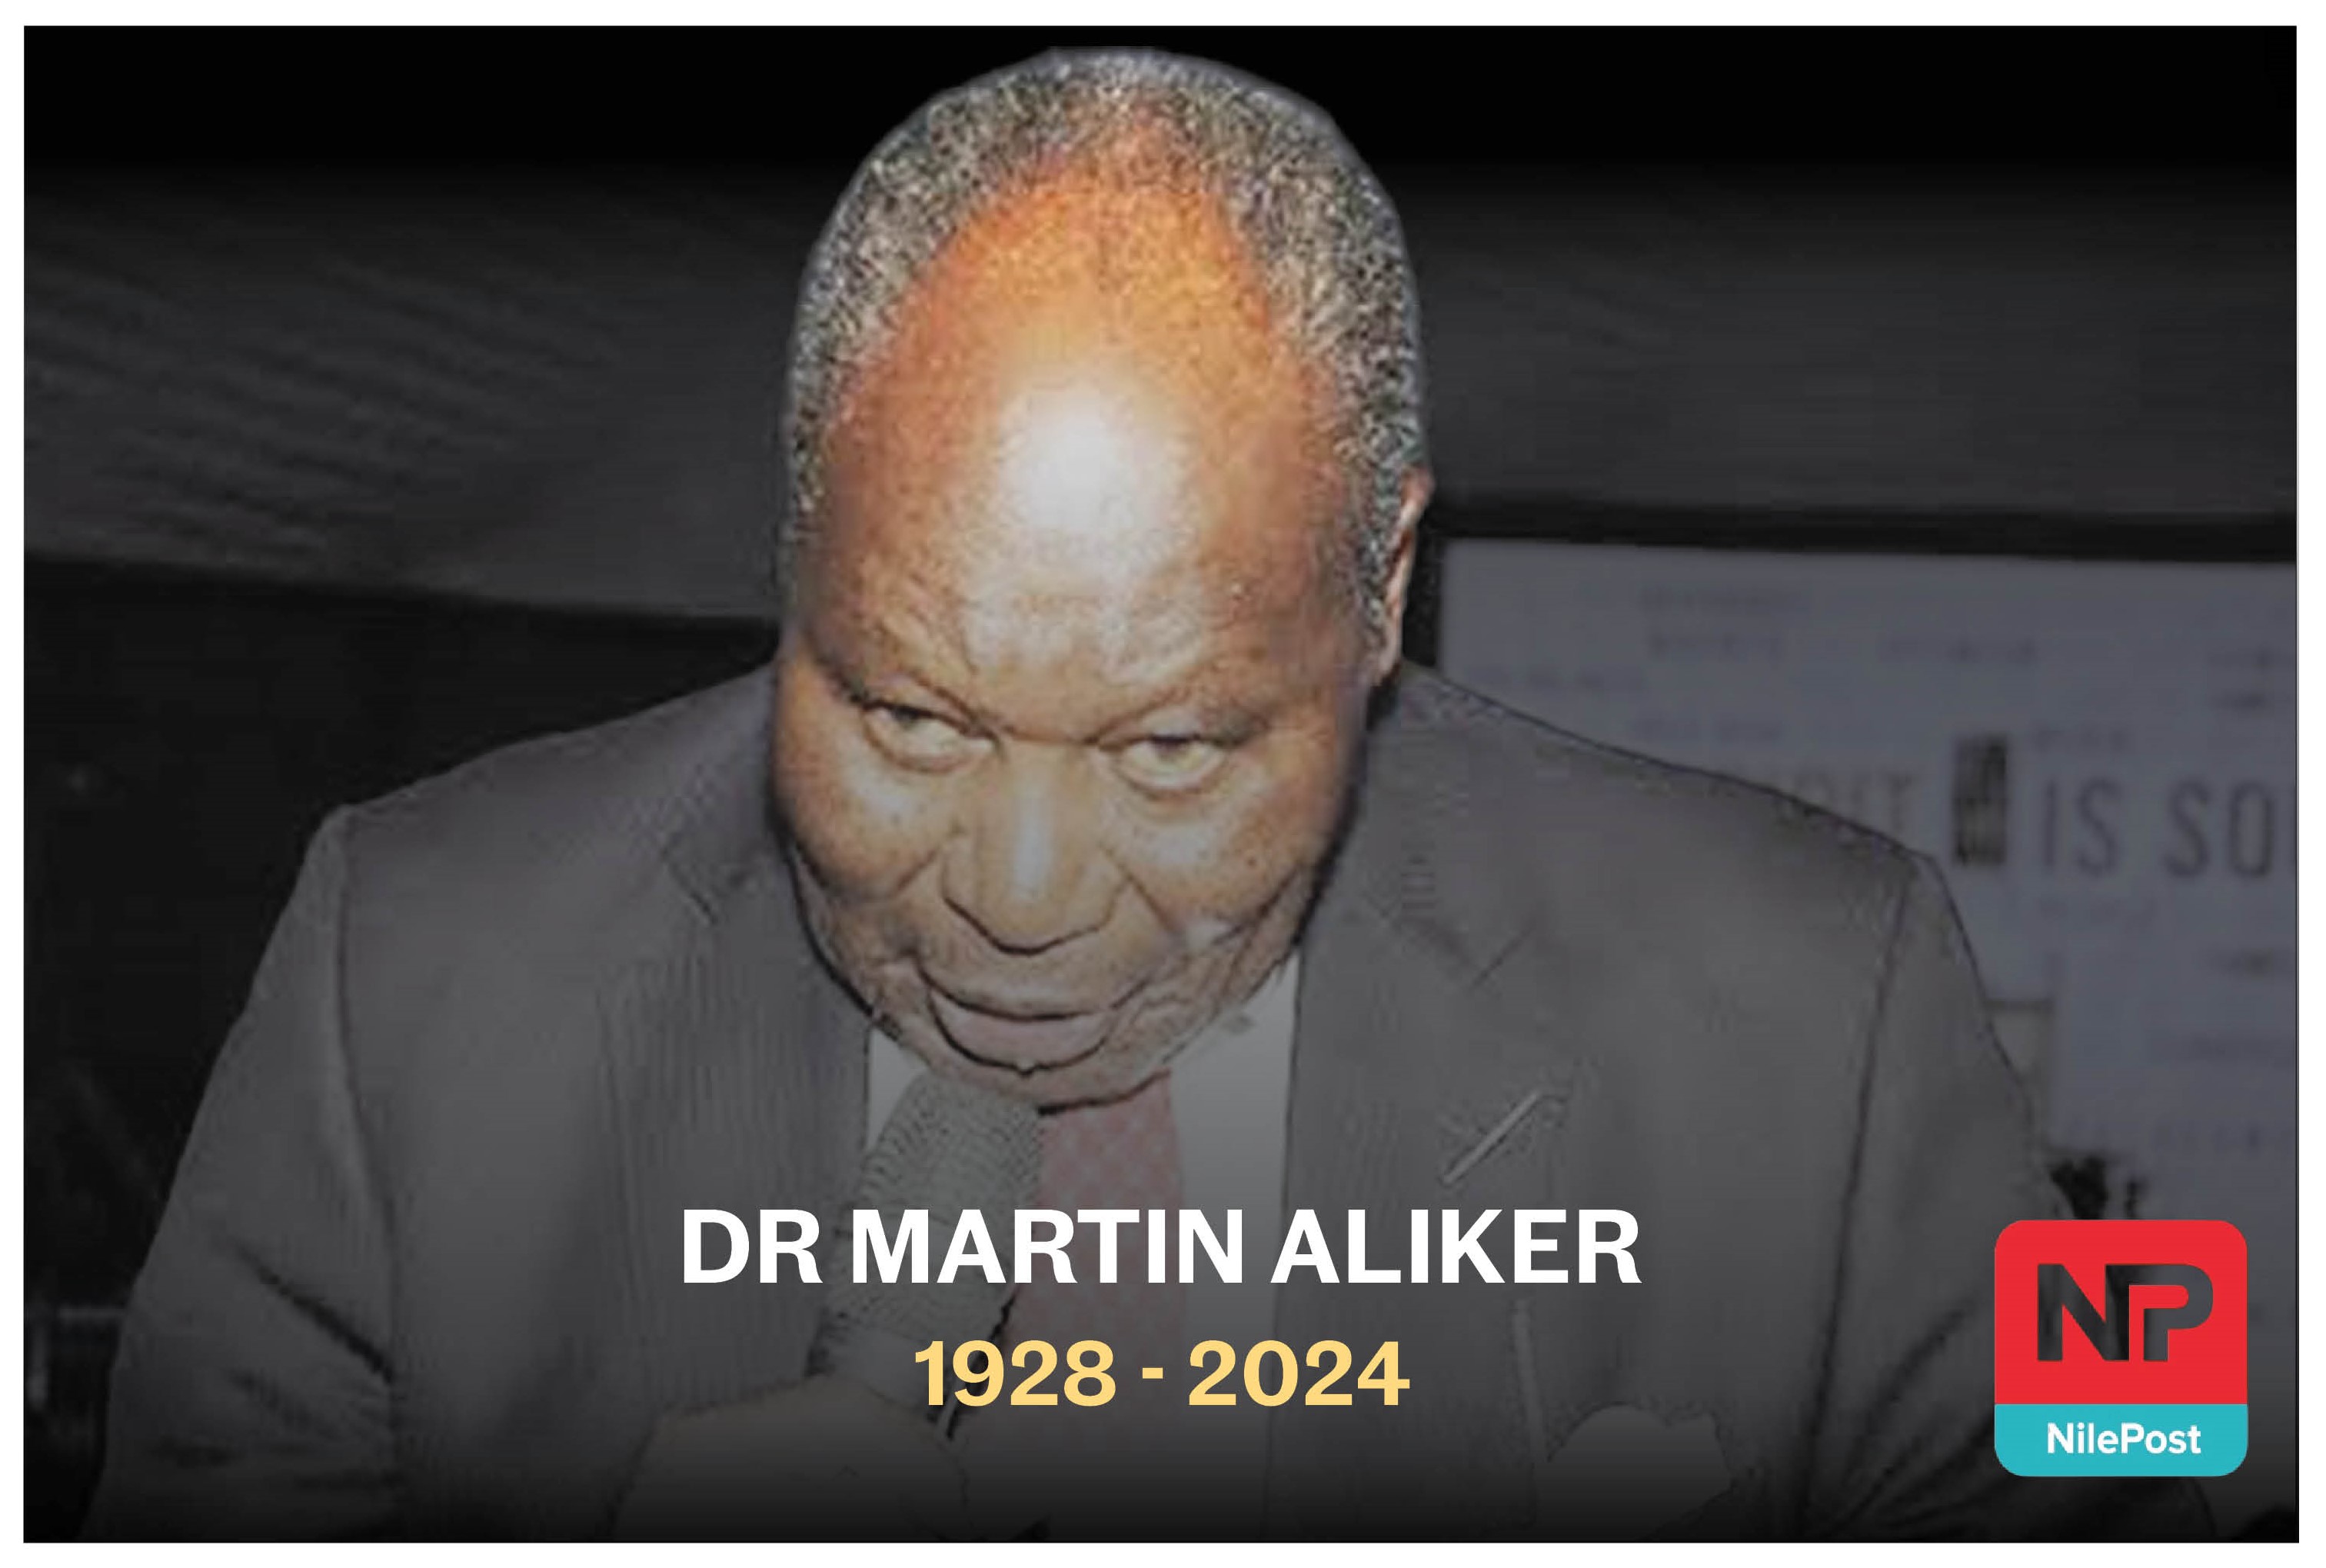 Dr Martin Aliker dies at 95